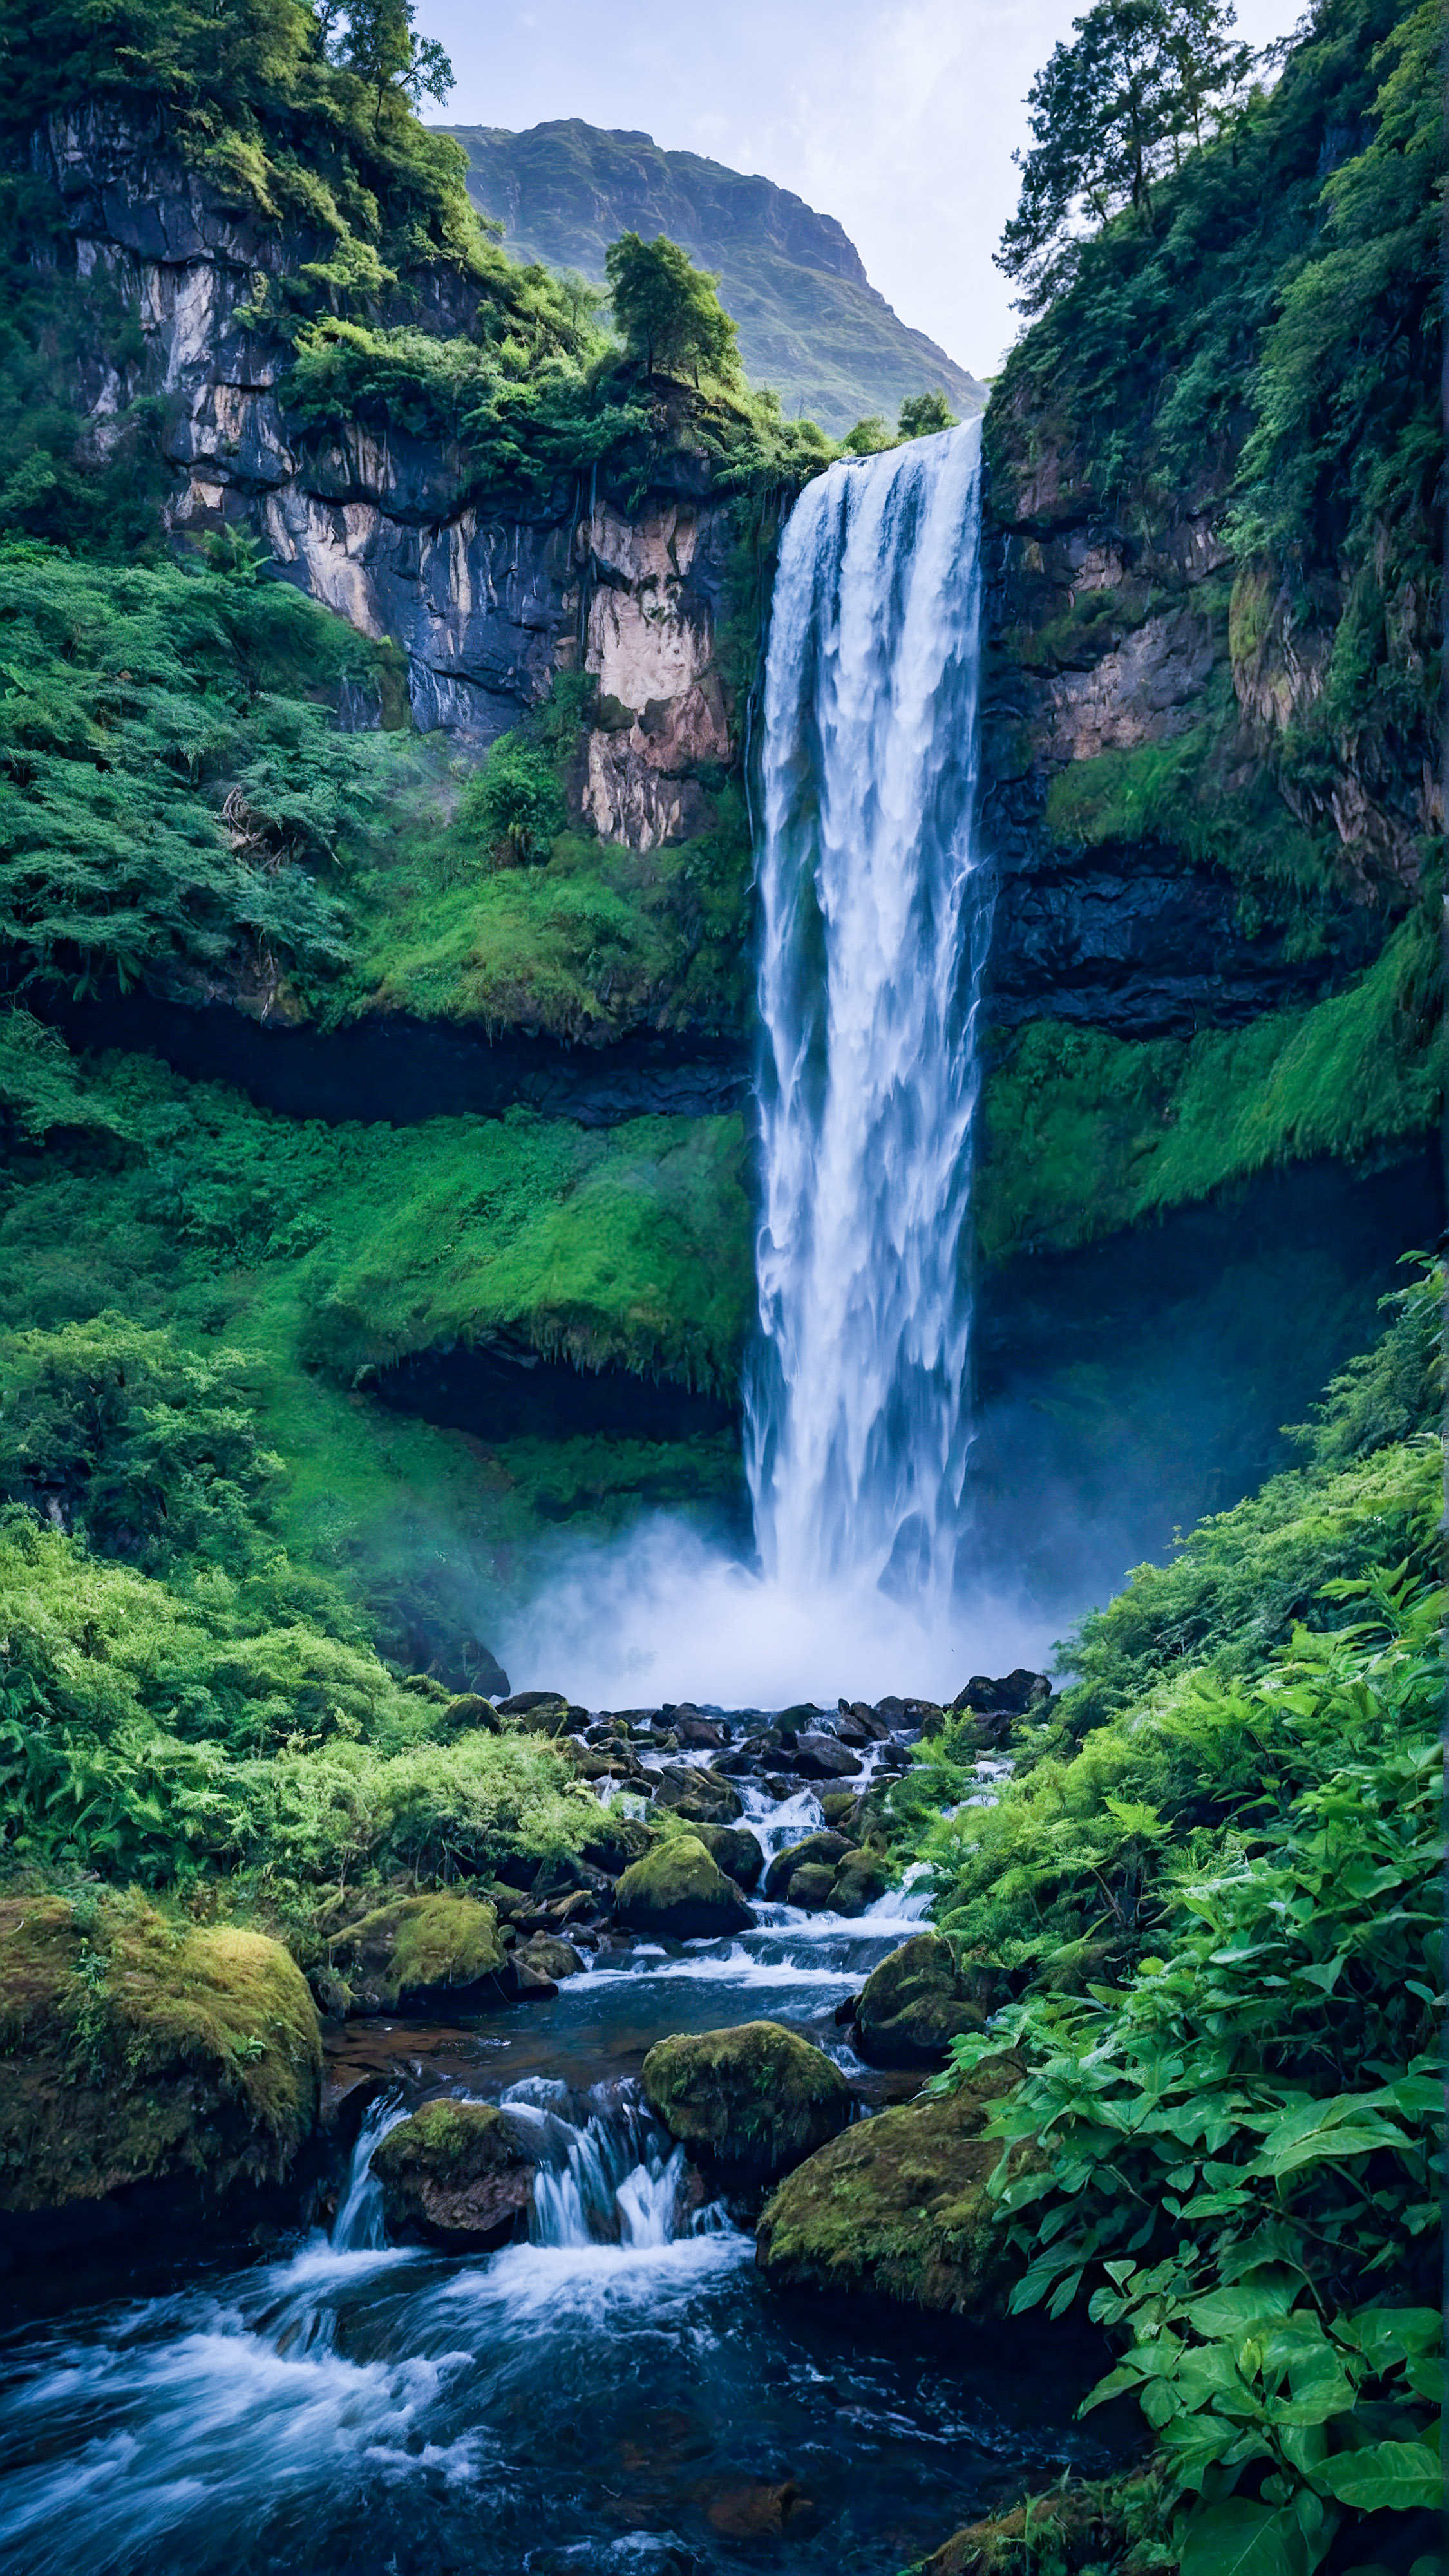 Découvrez la majesté de la nature avec notre meilleur fond d'écran iPhone, représentant une cascade majestueuse descendant d'une montagne, entourée de verdure luxuriante. 